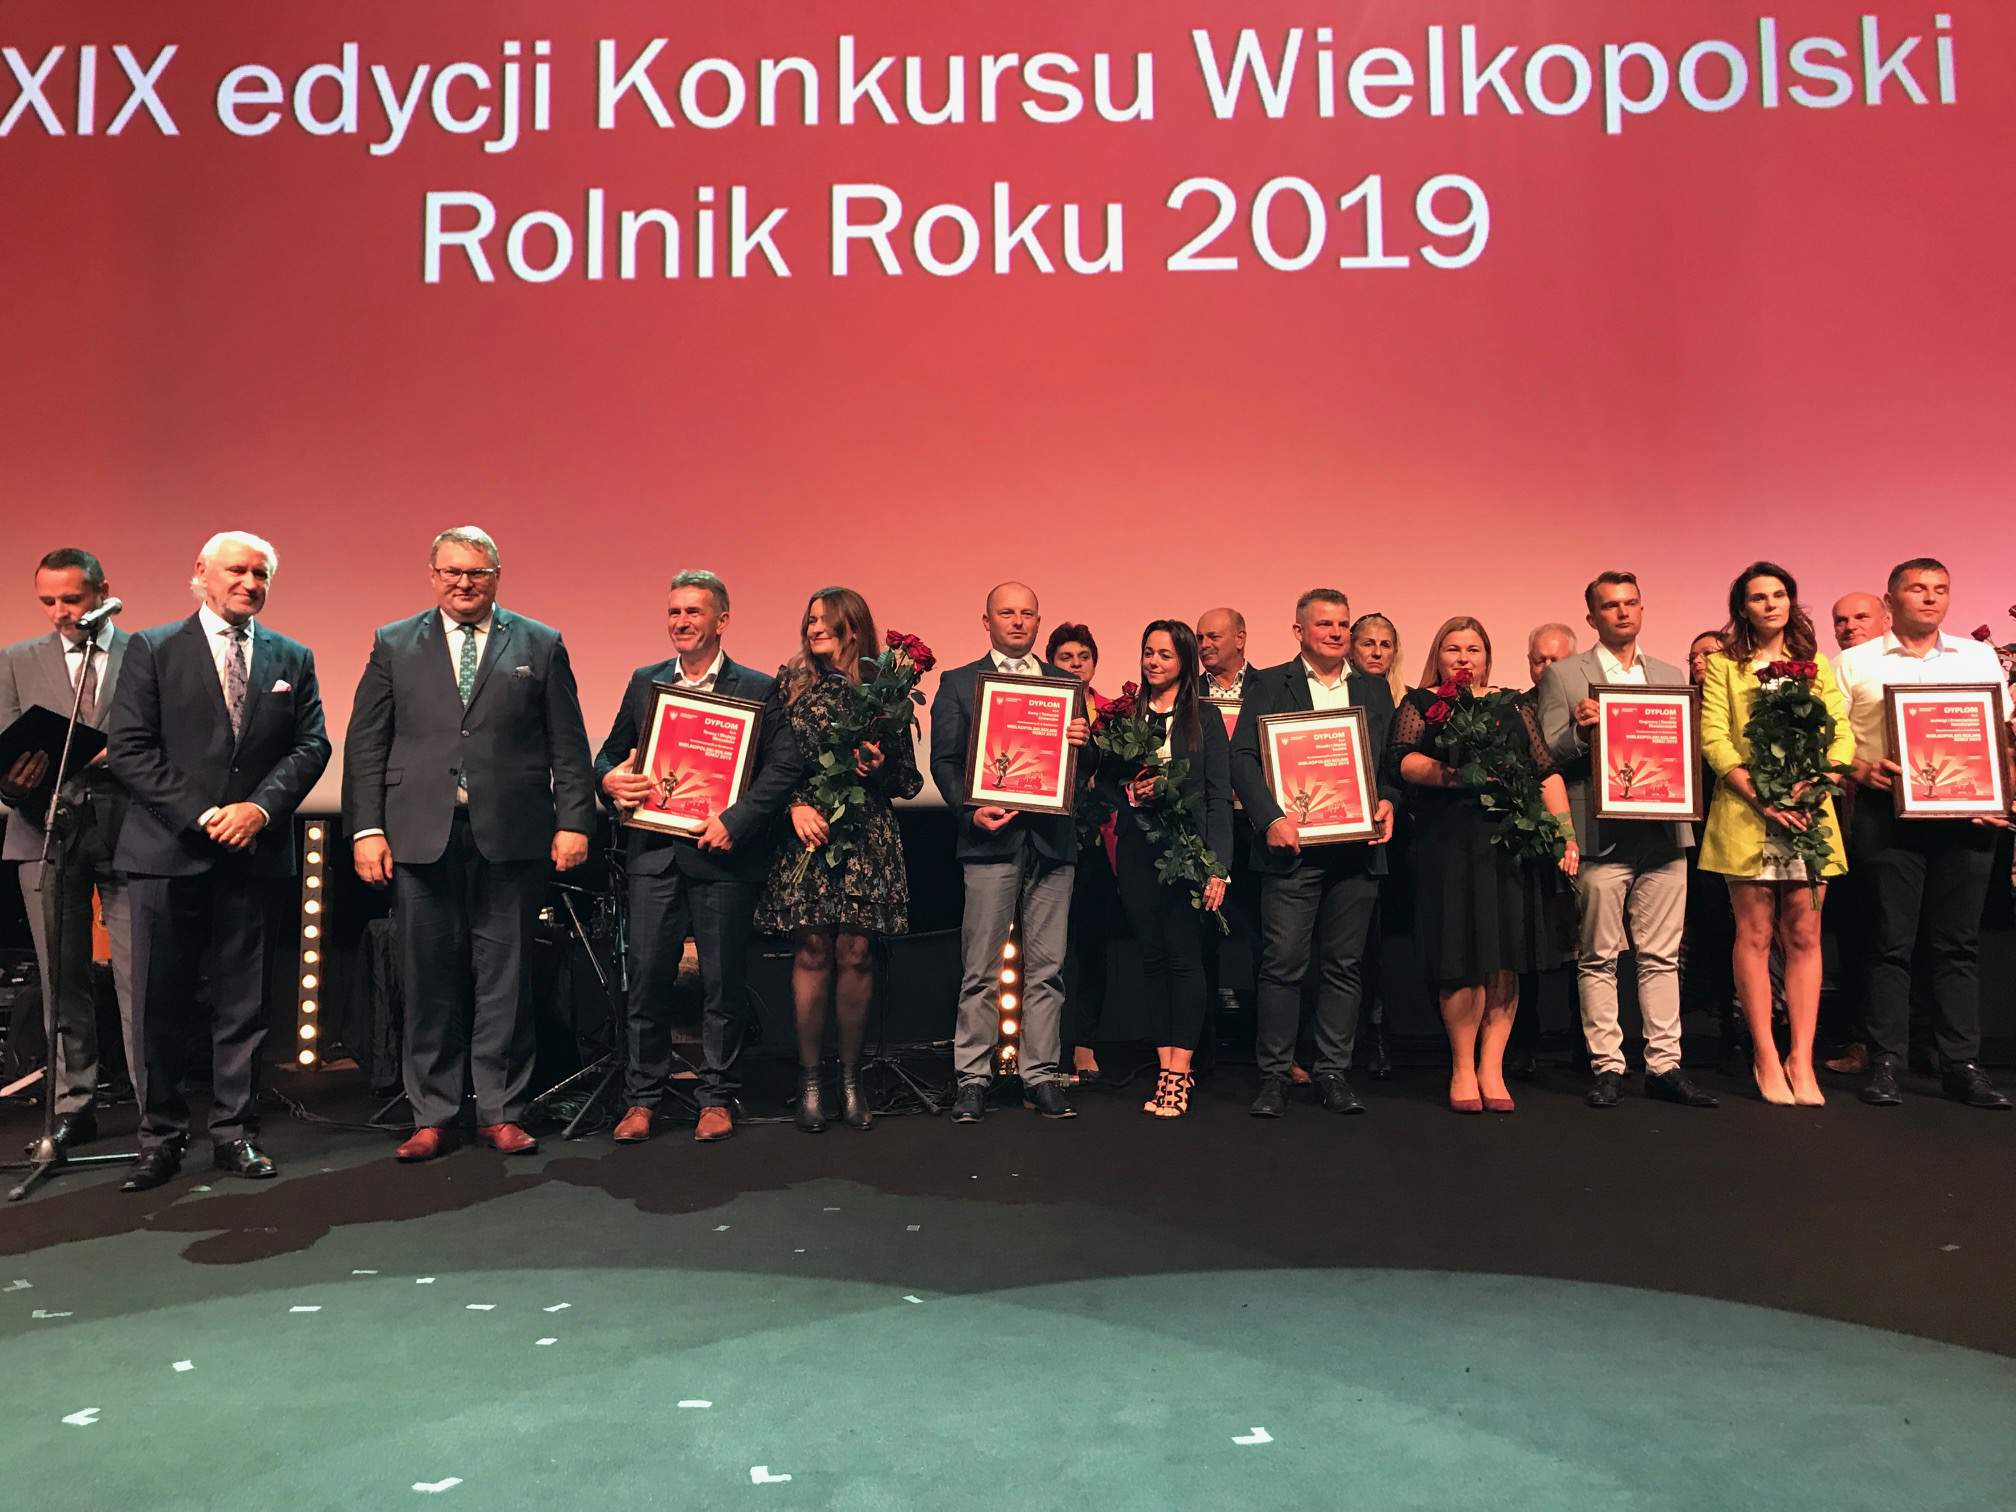 Nominowani do XIX edycji Konkursu Wielkopolski Rolnik Roku 2019.